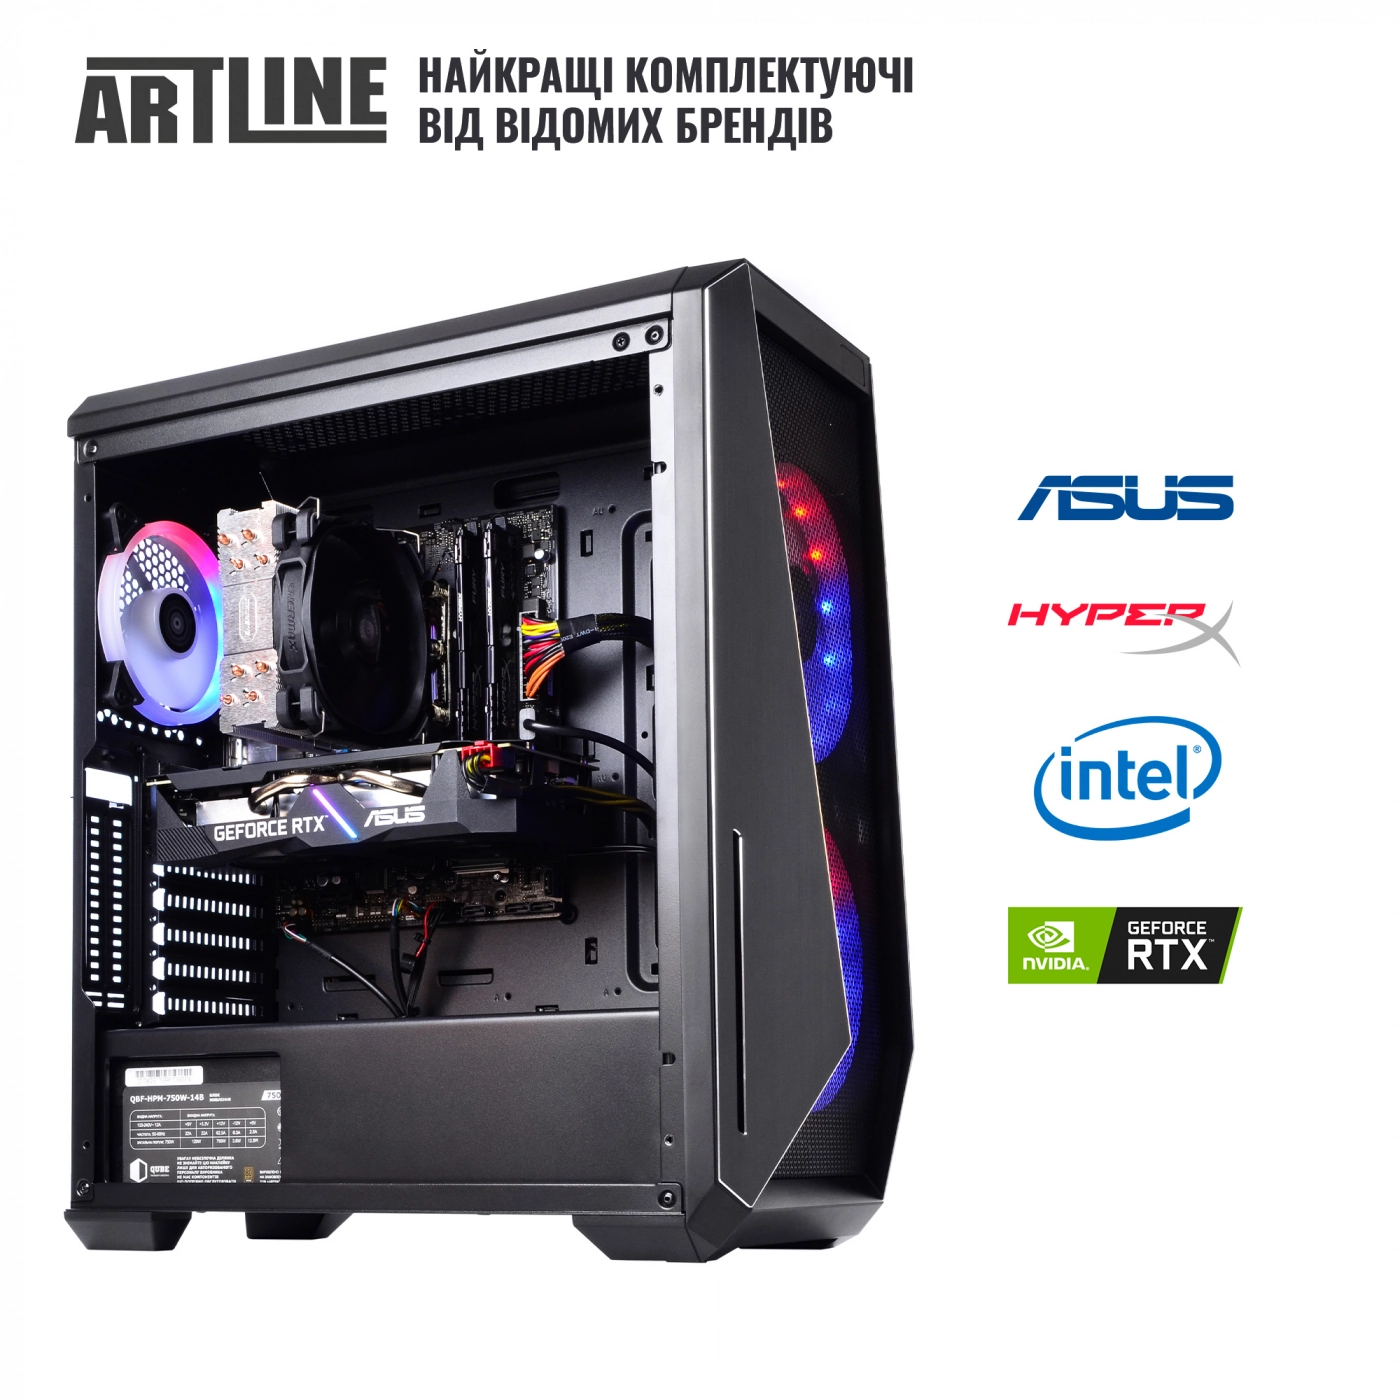 Купить Компьютер ARTLINE Gaming X90v03 - фото 6